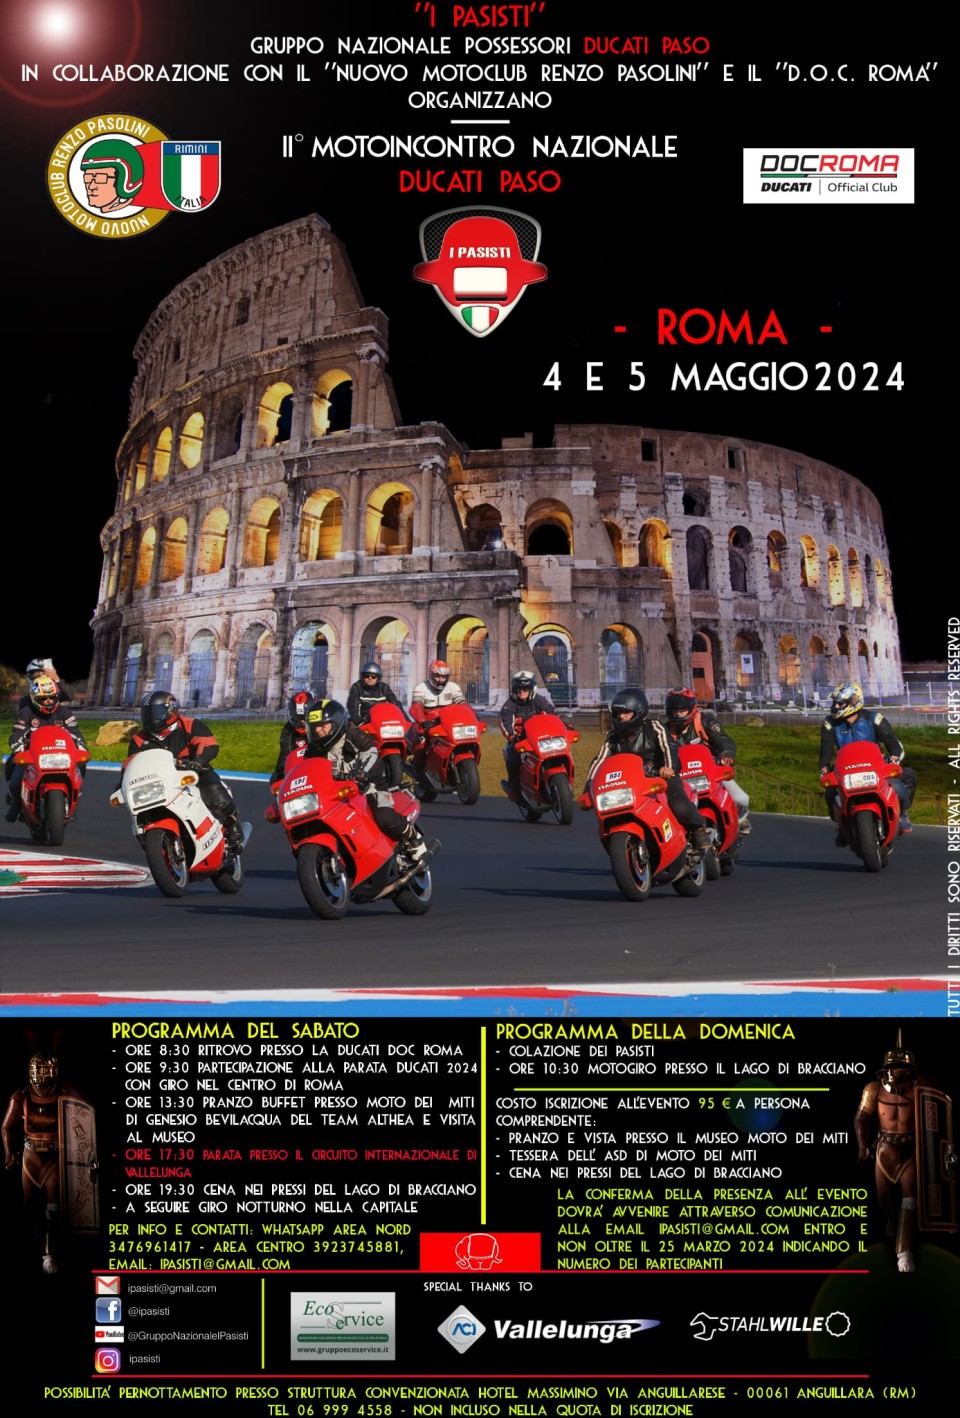 News: Il II° Motoincontro Nazionale Ducati Paso a Roma il 4 e 5 maggio